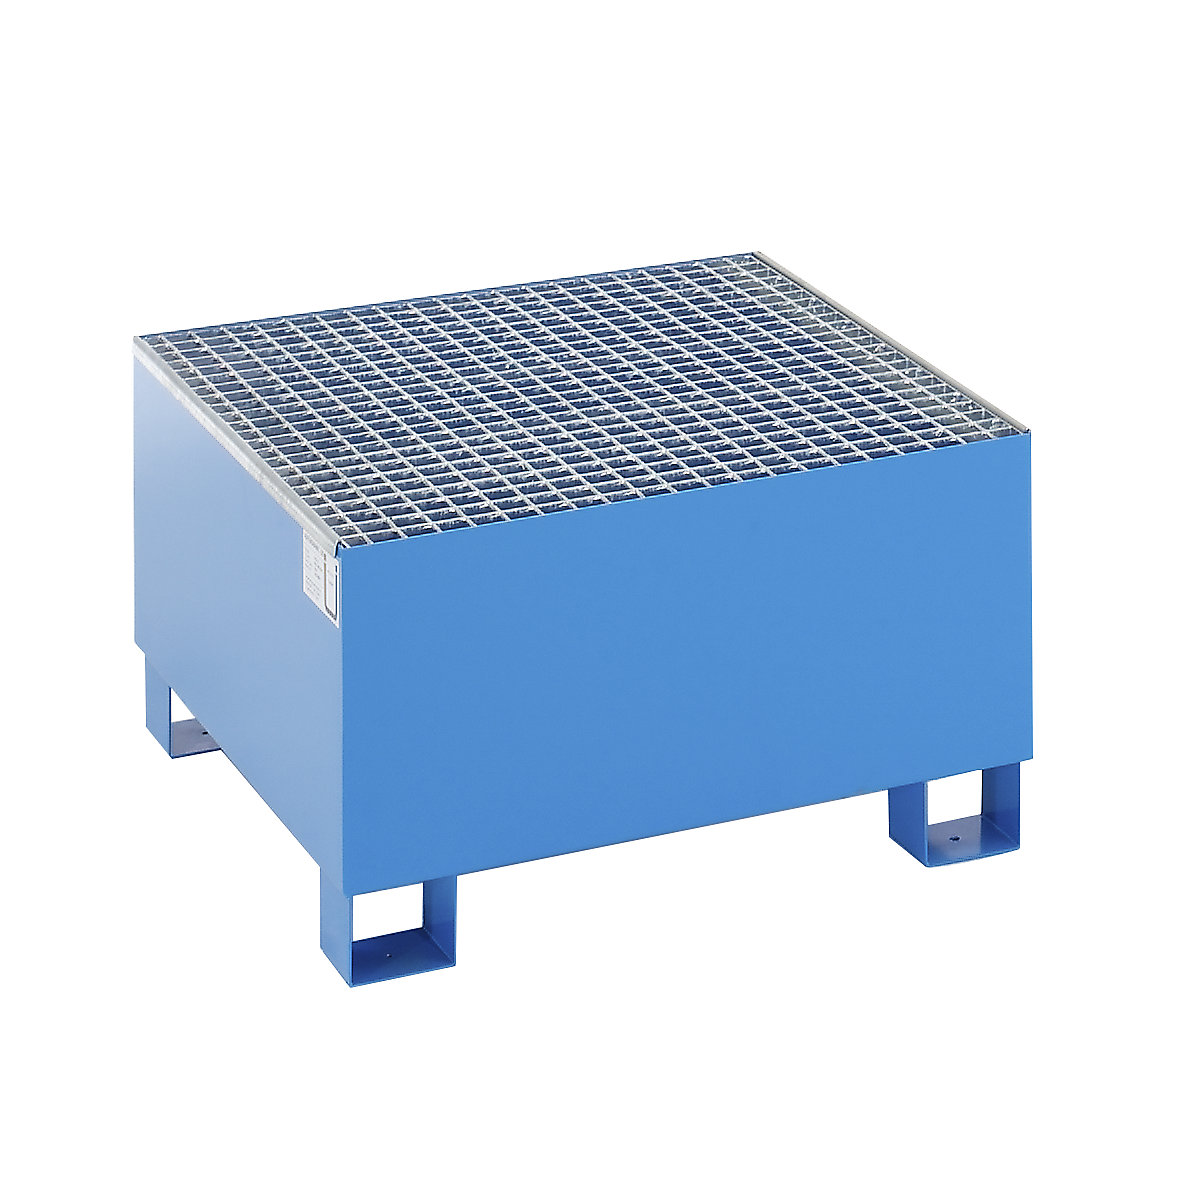 EUROKRAFTbasic Stahl-Auffangwanne für 200-l-Fässer, LxBxH 800 x 800 x 465 mm, mit Zulassung, blau pulverbeschichtet, mit Gitterrost